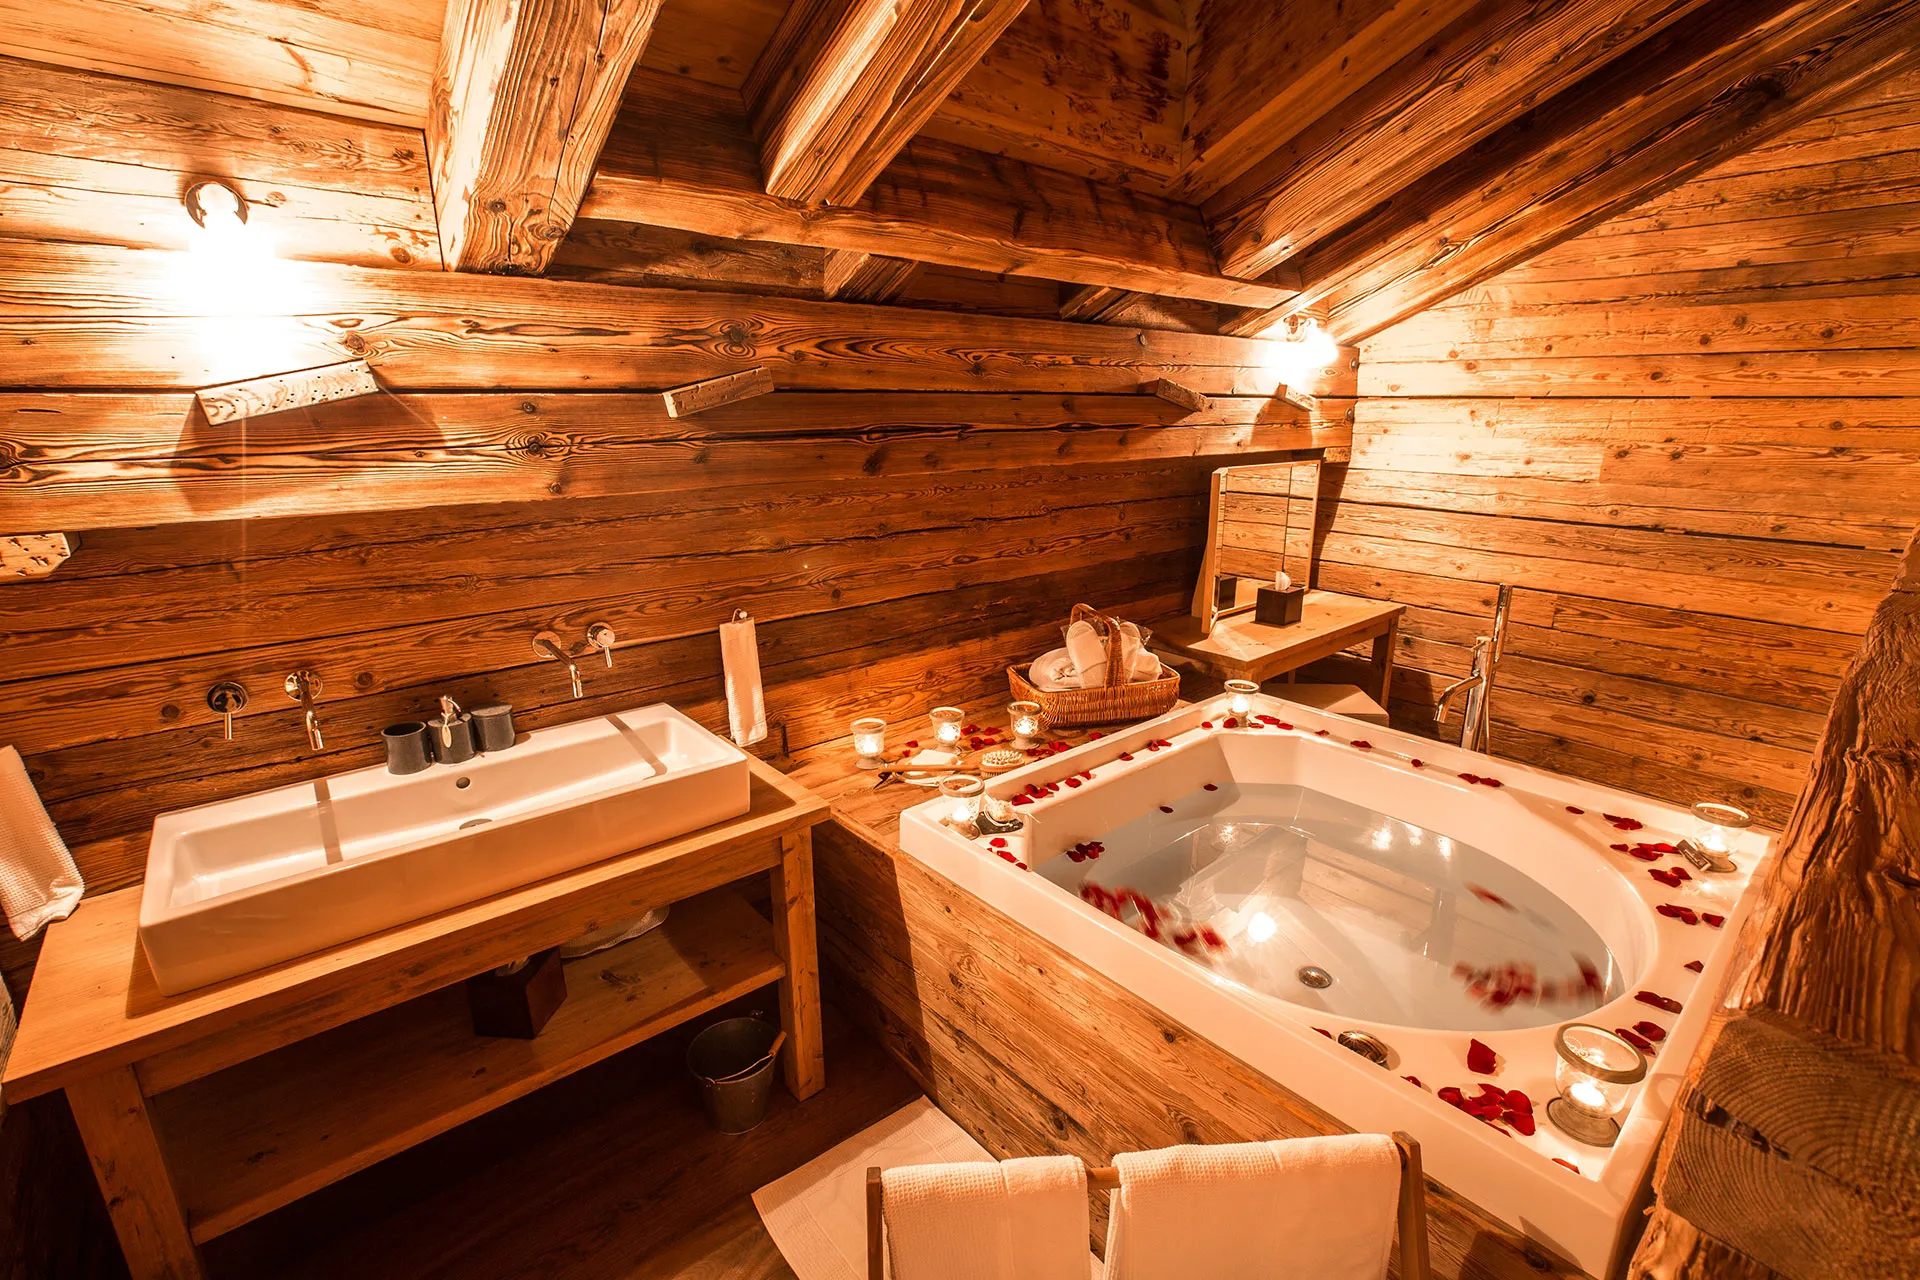 Romantische Badewanne in Holzhütte